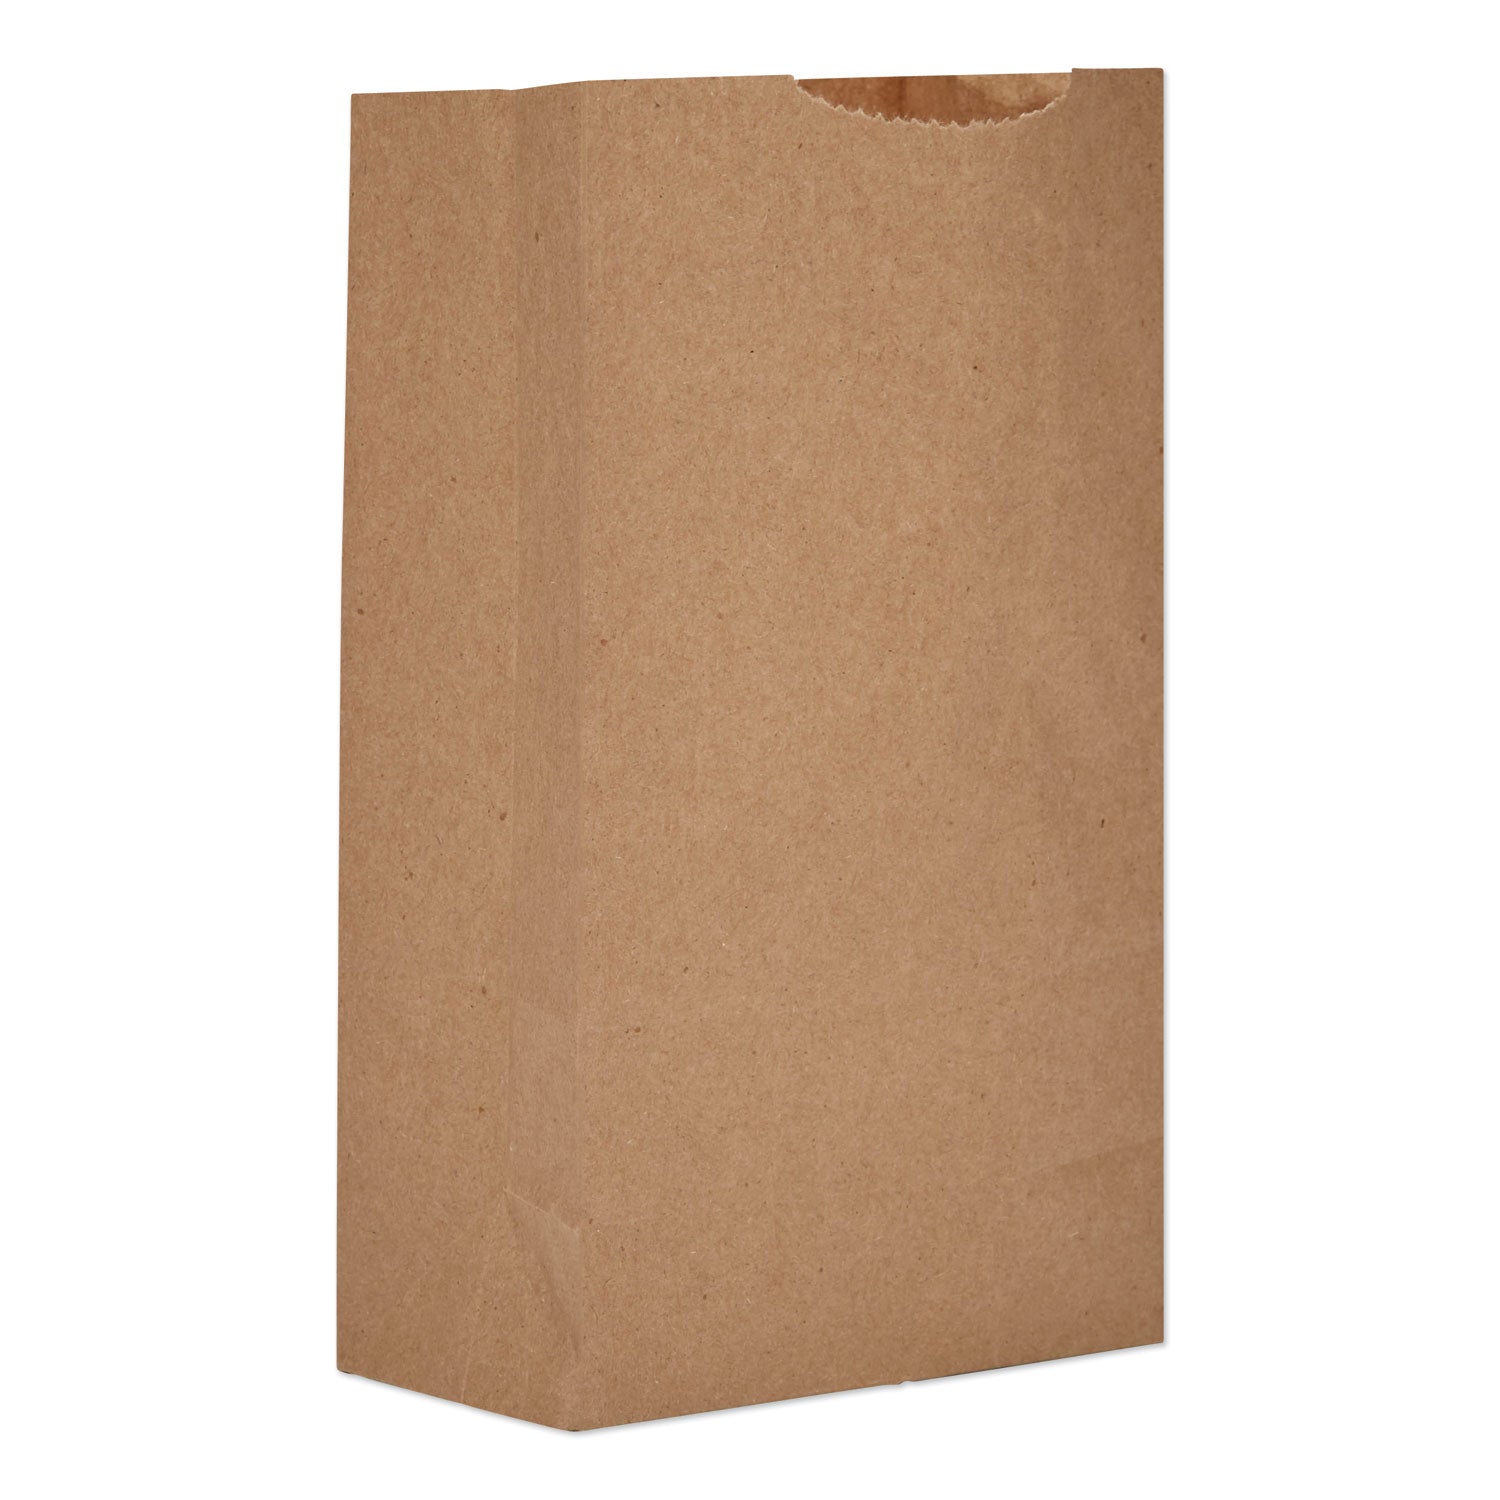 grocery-paper-bags-52-lb-capacity-#3-475-x-294-x-804-kraft-500-bags_baggx3500 - 1